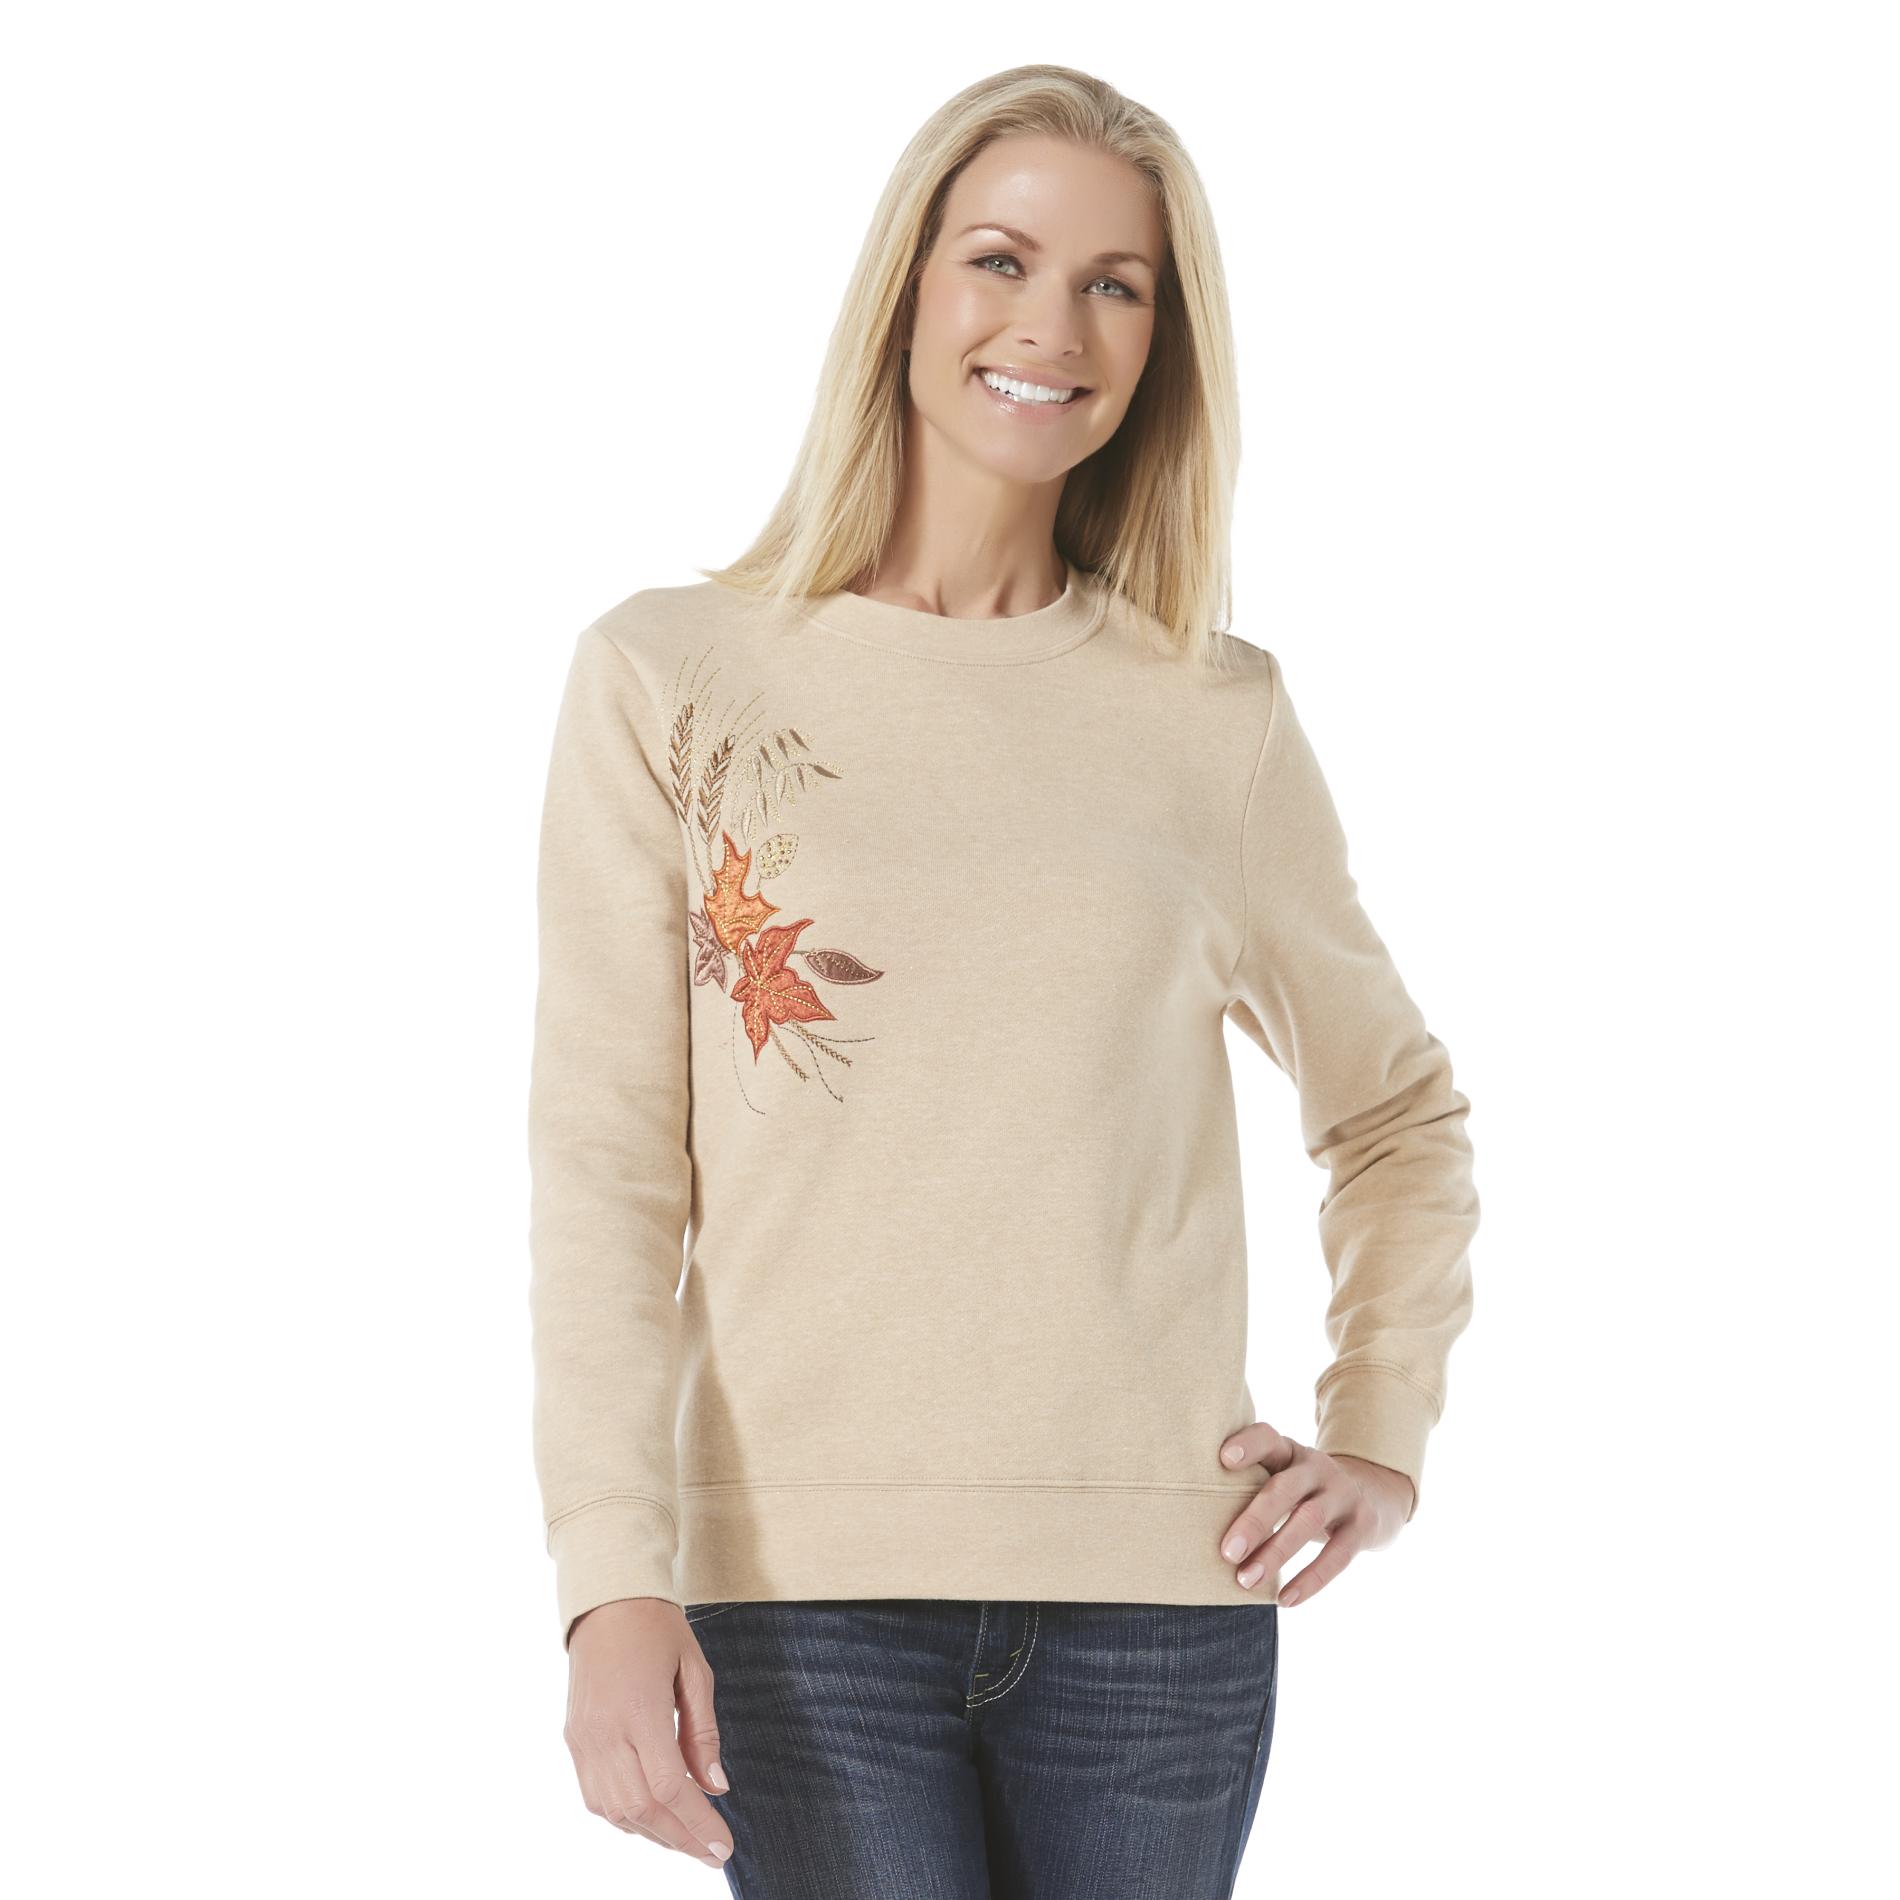 Holiday Editions Women's Fleece Sweatshirt - Leaves